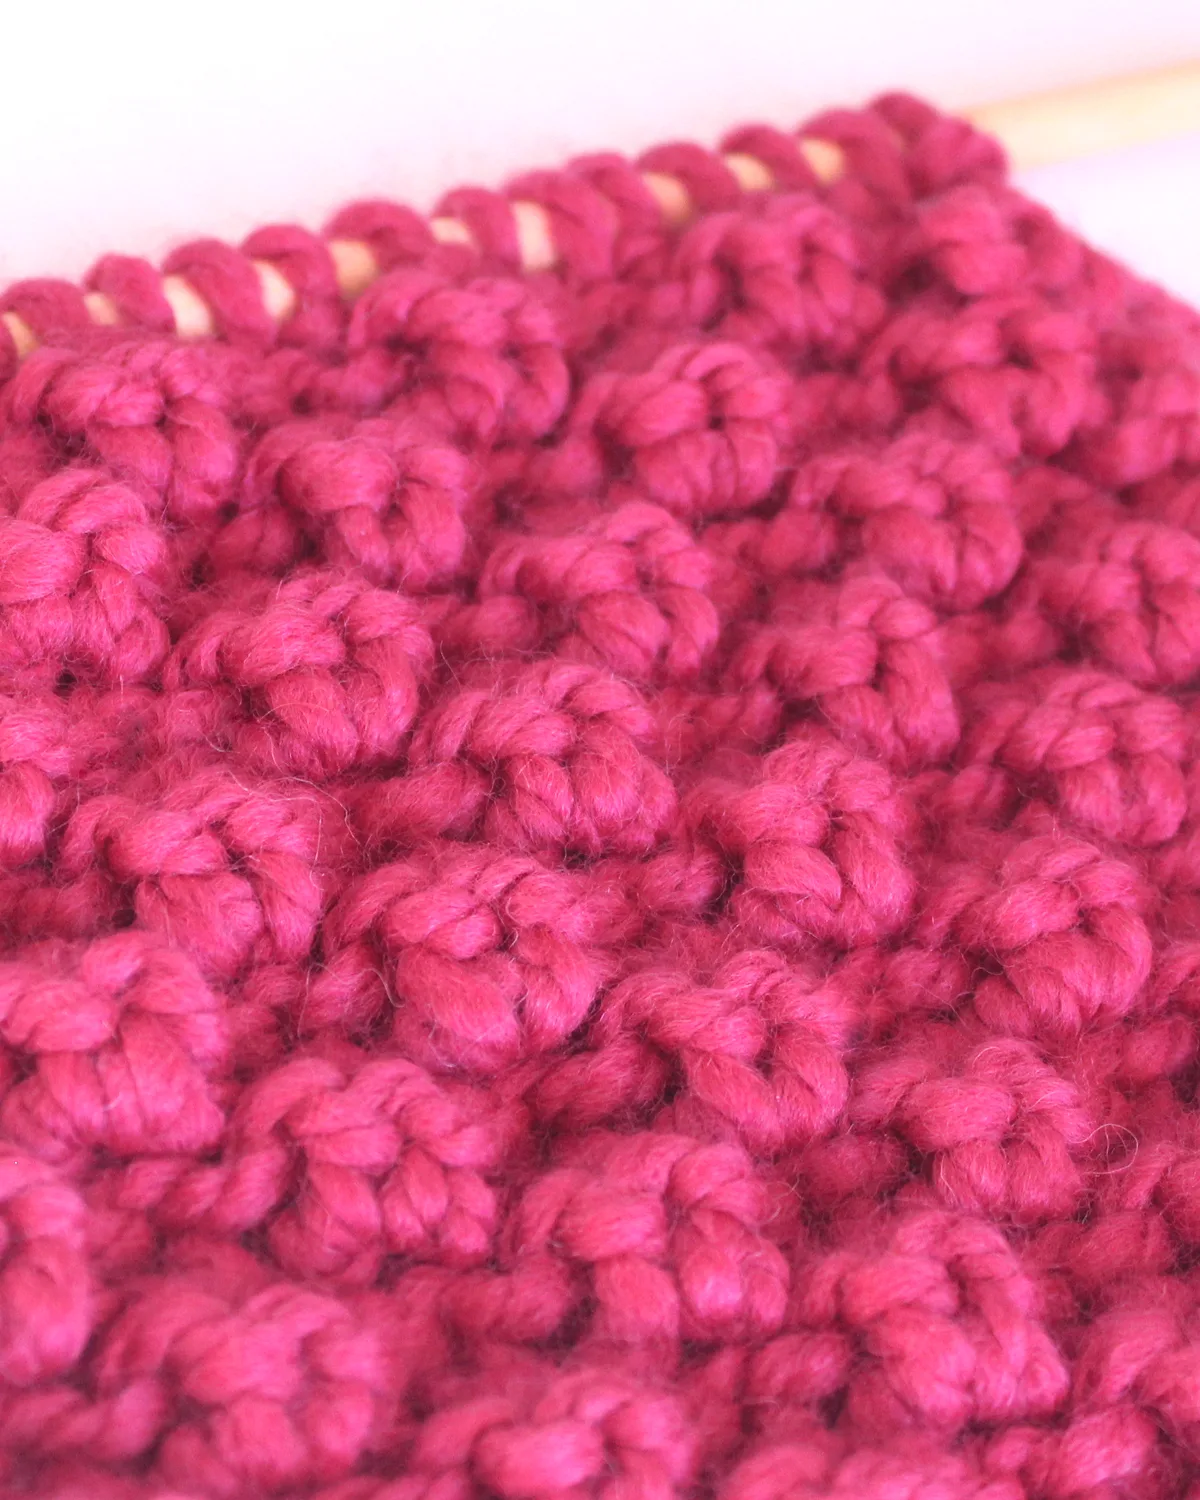 Close up of Raspberry Stitch pattern on knitting needle.